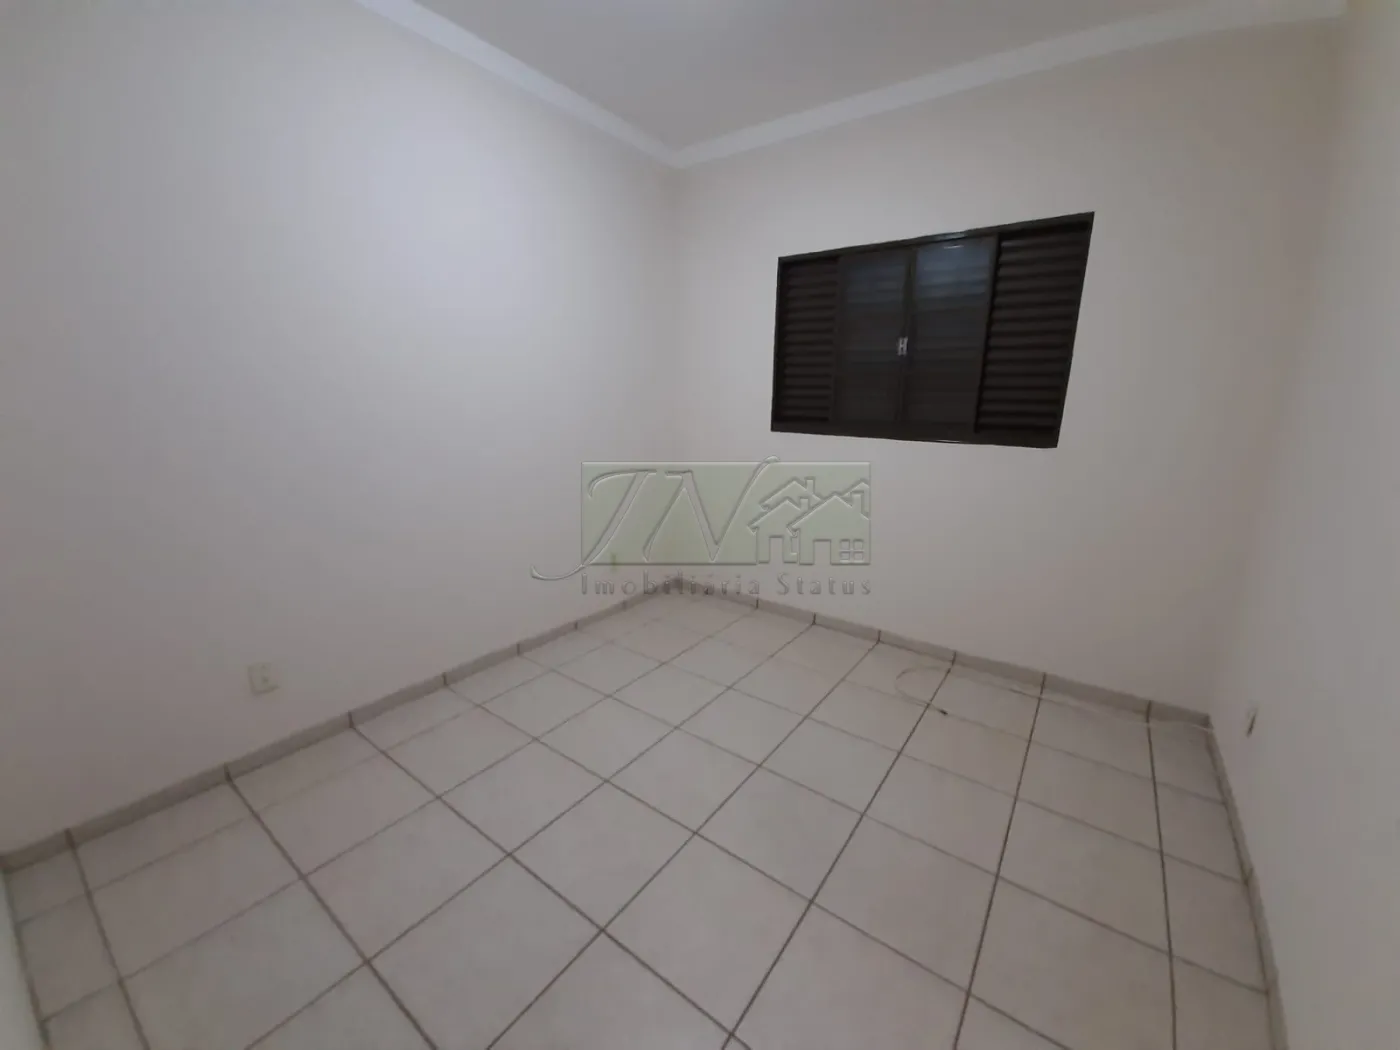 Residenciais - Casas - Chácara Peixe - Santa Cruz do Rio Pardo R$ 1.750 ...